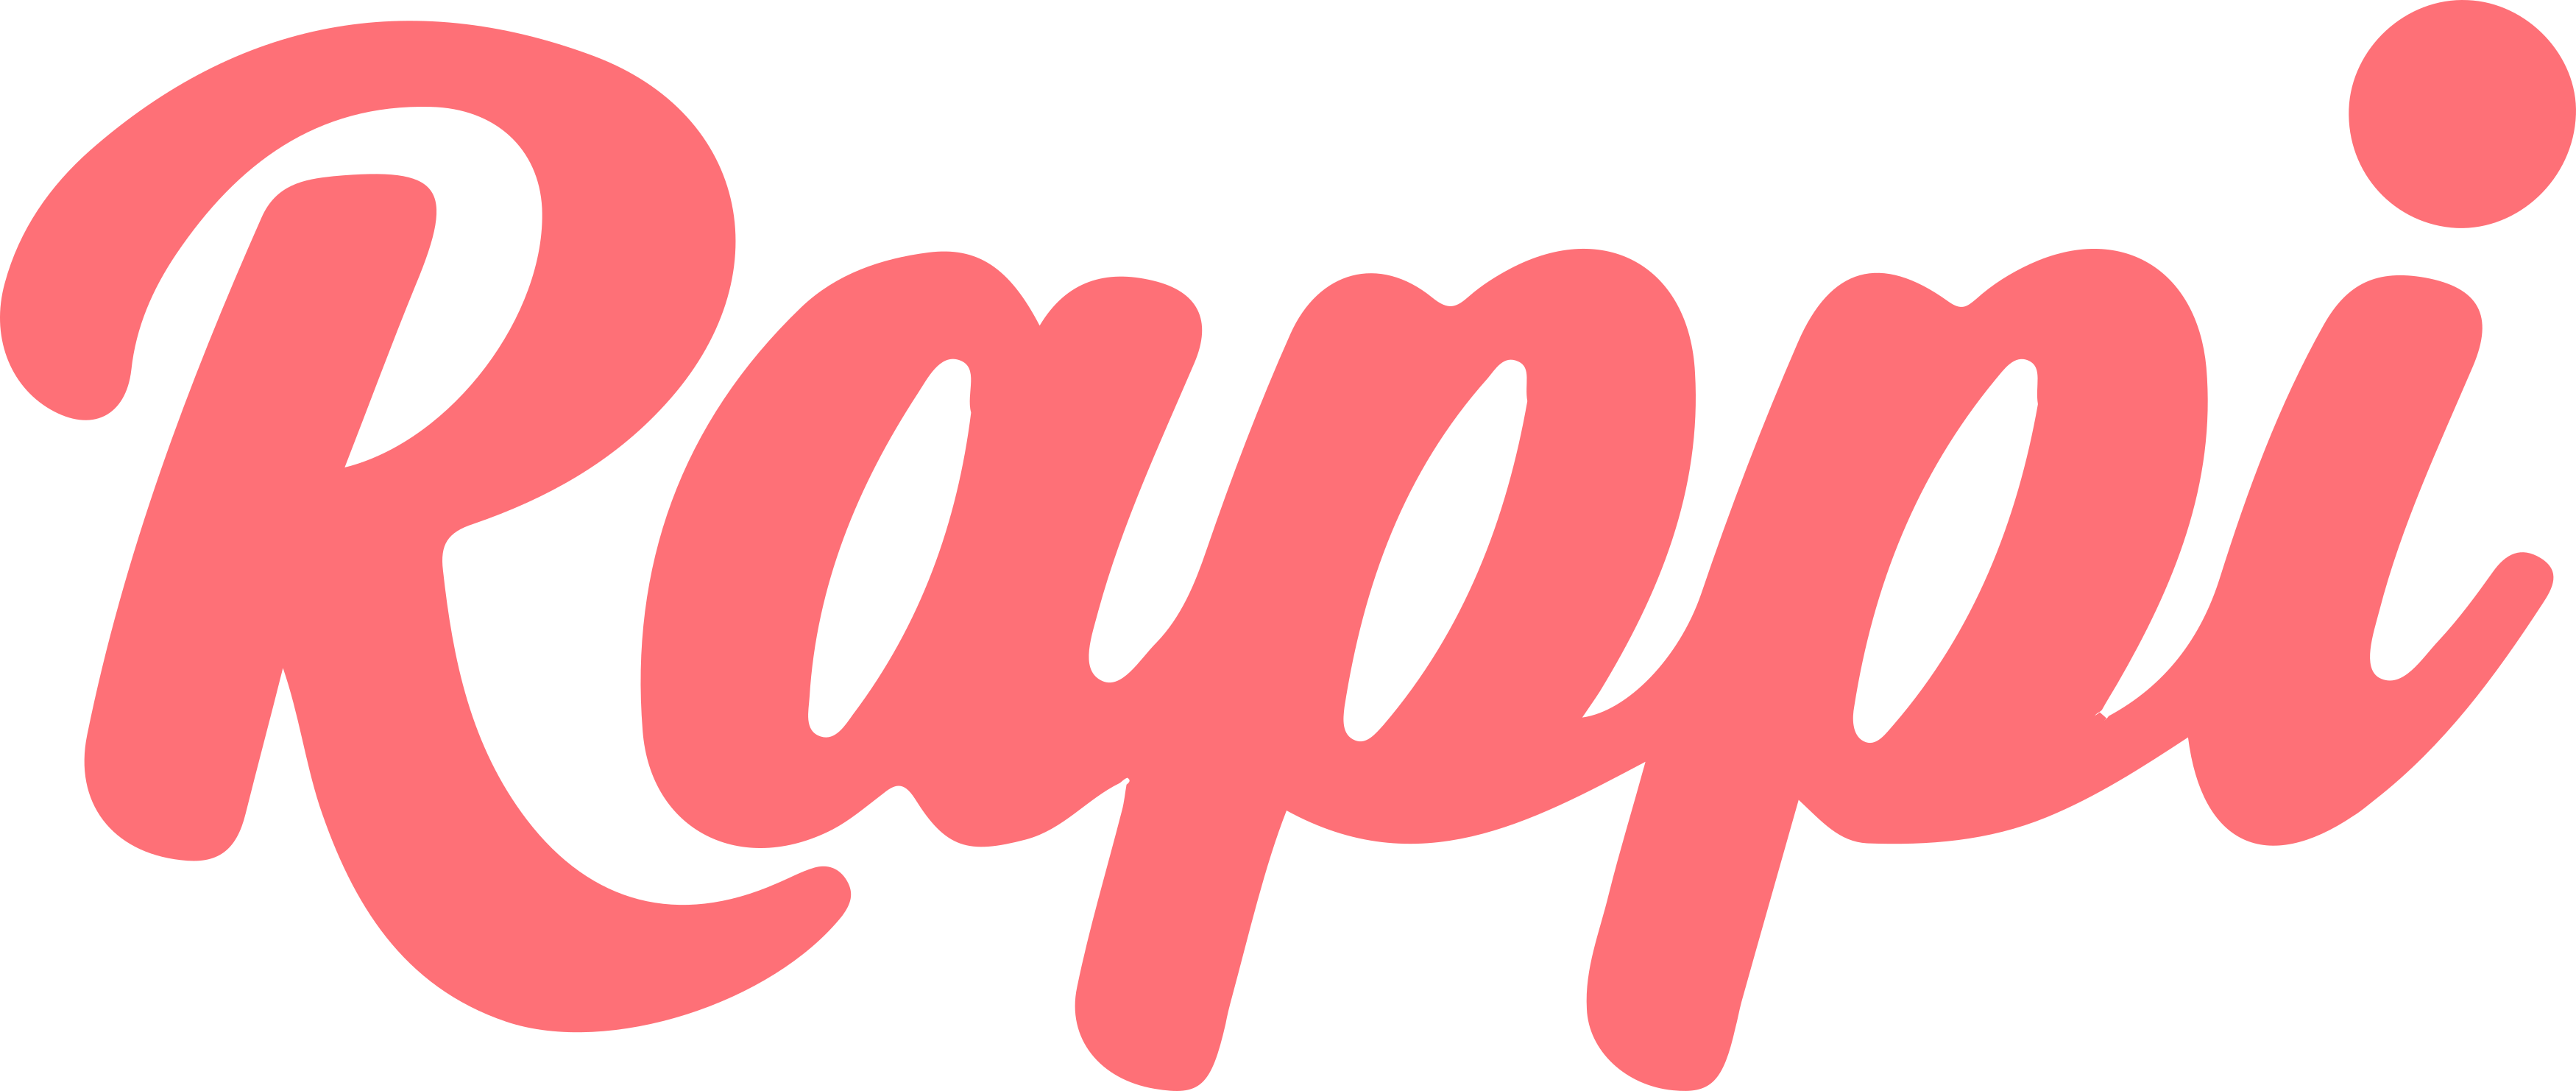 Logotipo de plataforma de entrega a domicilio Rappi con el que puedes realizar un pedido de comida hecha a la parrilla japonesa.